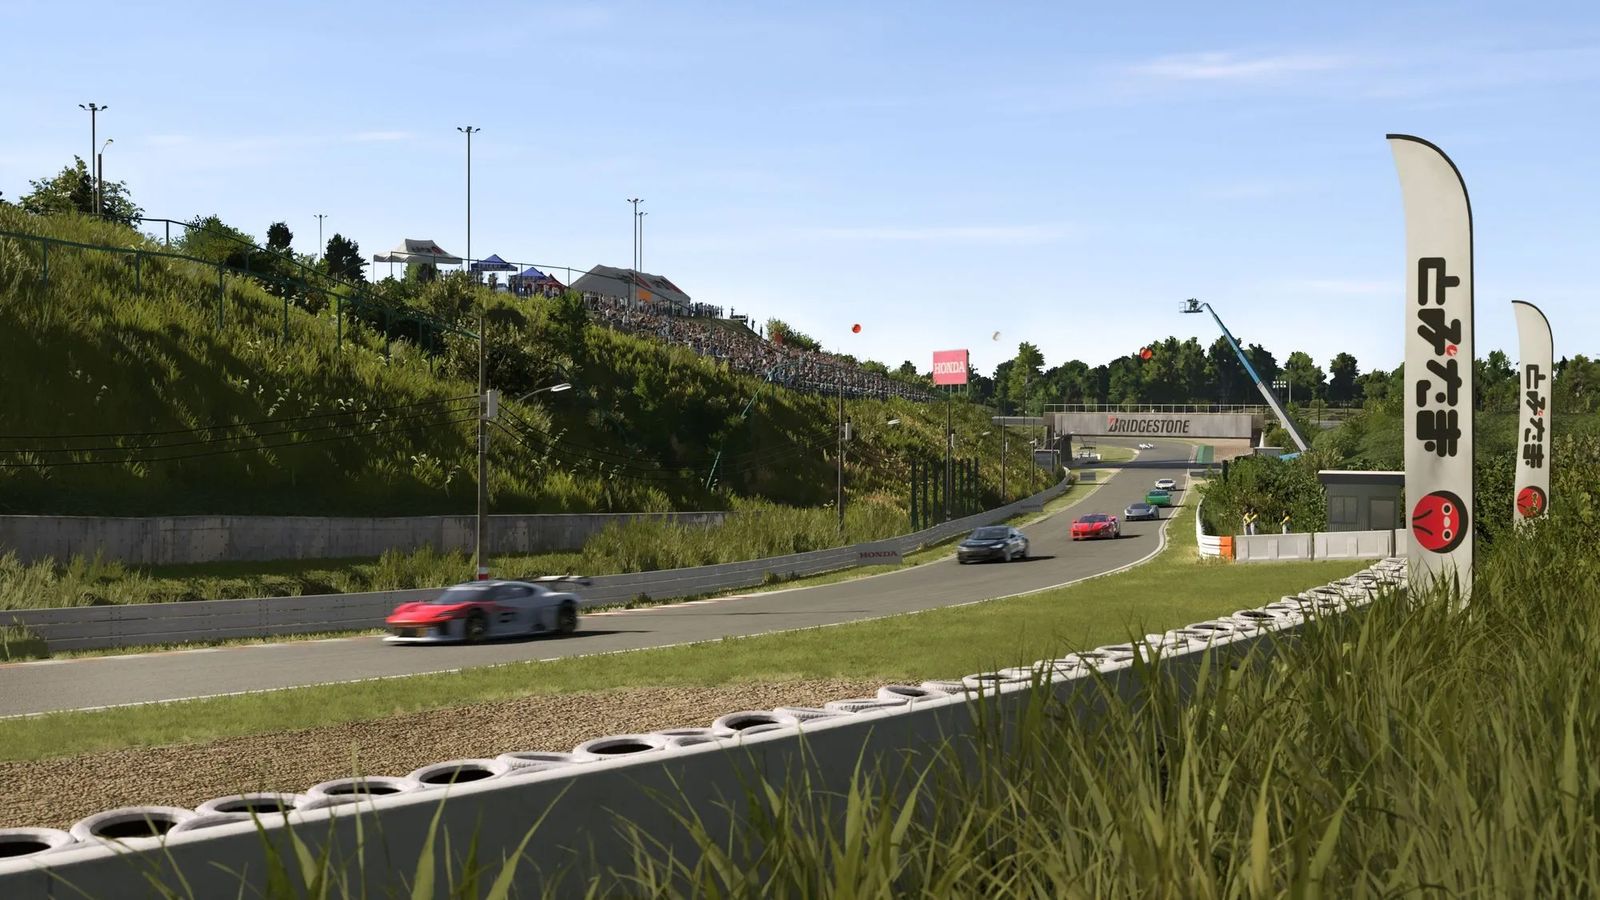 Forza Motorsport Nurburgring GP circuit